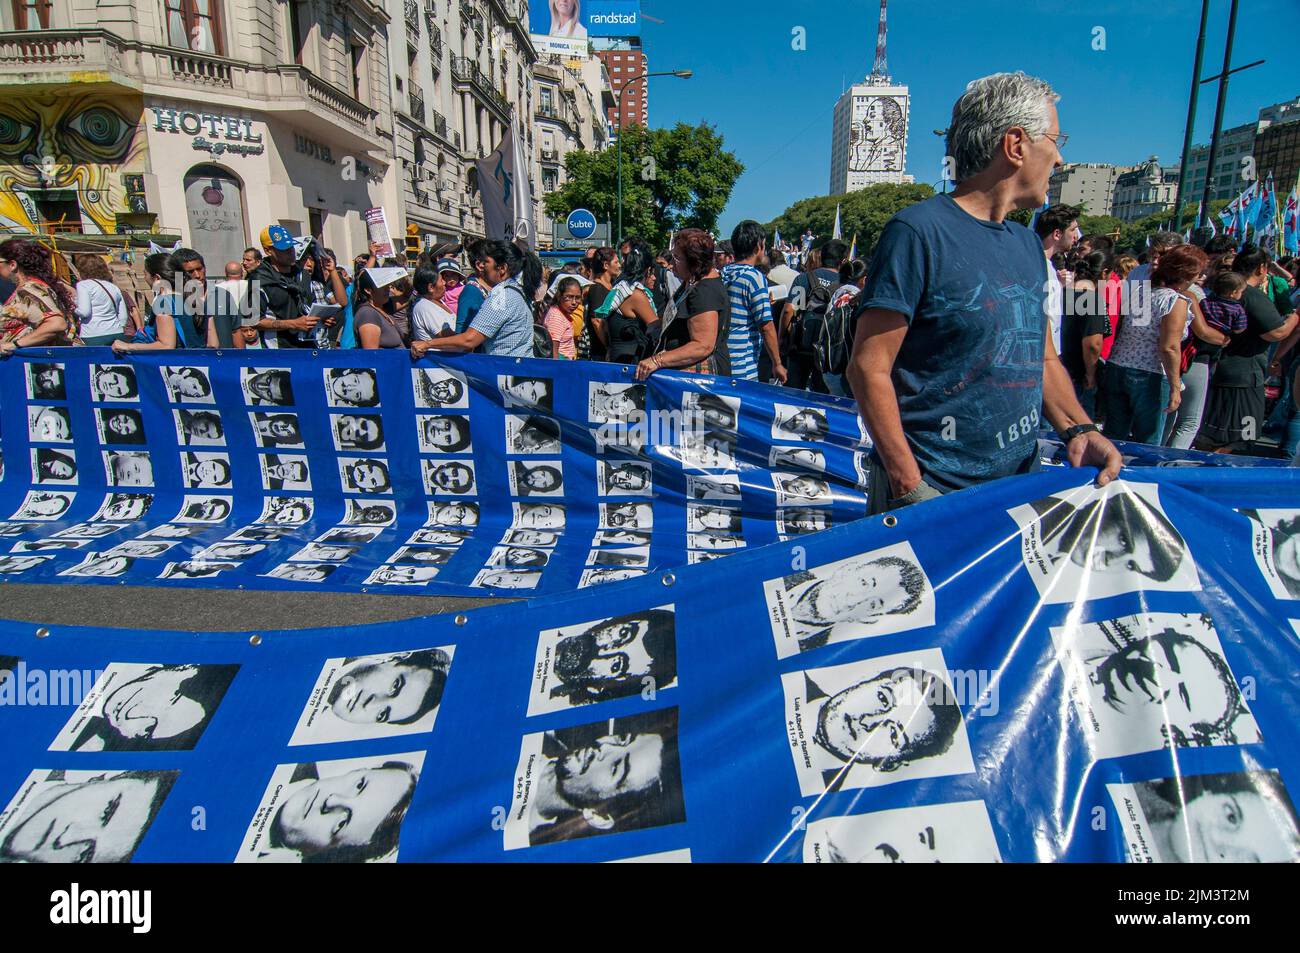 Un gros plan de personnes avec les images de personnes kidnappées et disparues pendant une dictature militaire Banque D'Images